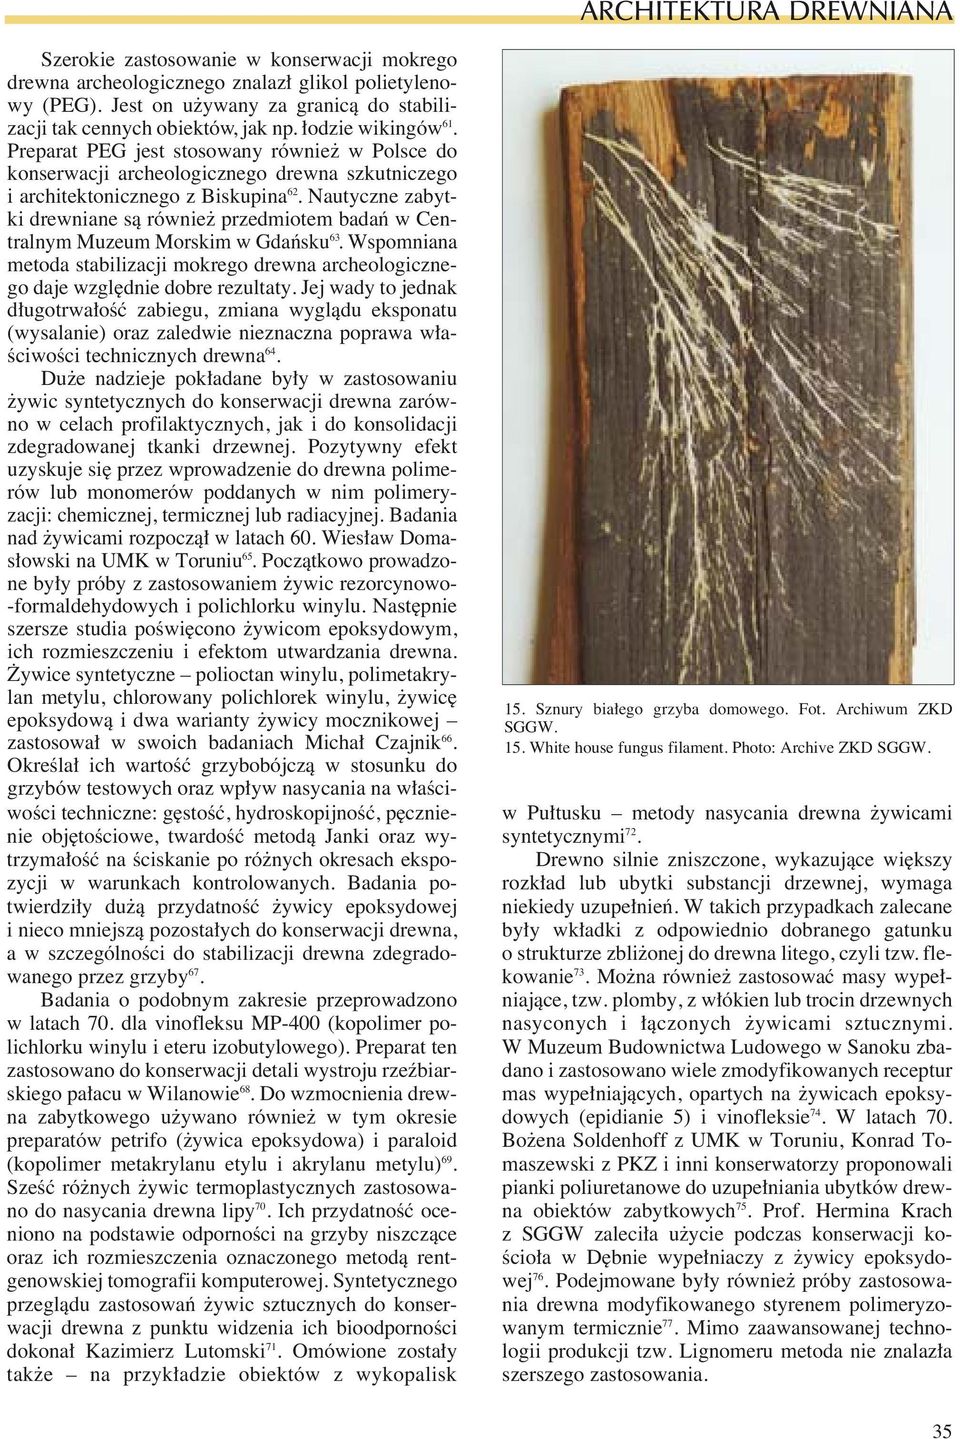 Nautyczne zabytki drewniane sà równie przedmiotem badaƒ w Centralnym Muzeum Morskim w Gdaƒsku 63. Wspomniana metoda stabilizacji mokrego drewna archeologicznego daje wzgl dnie dobre rezultaty.